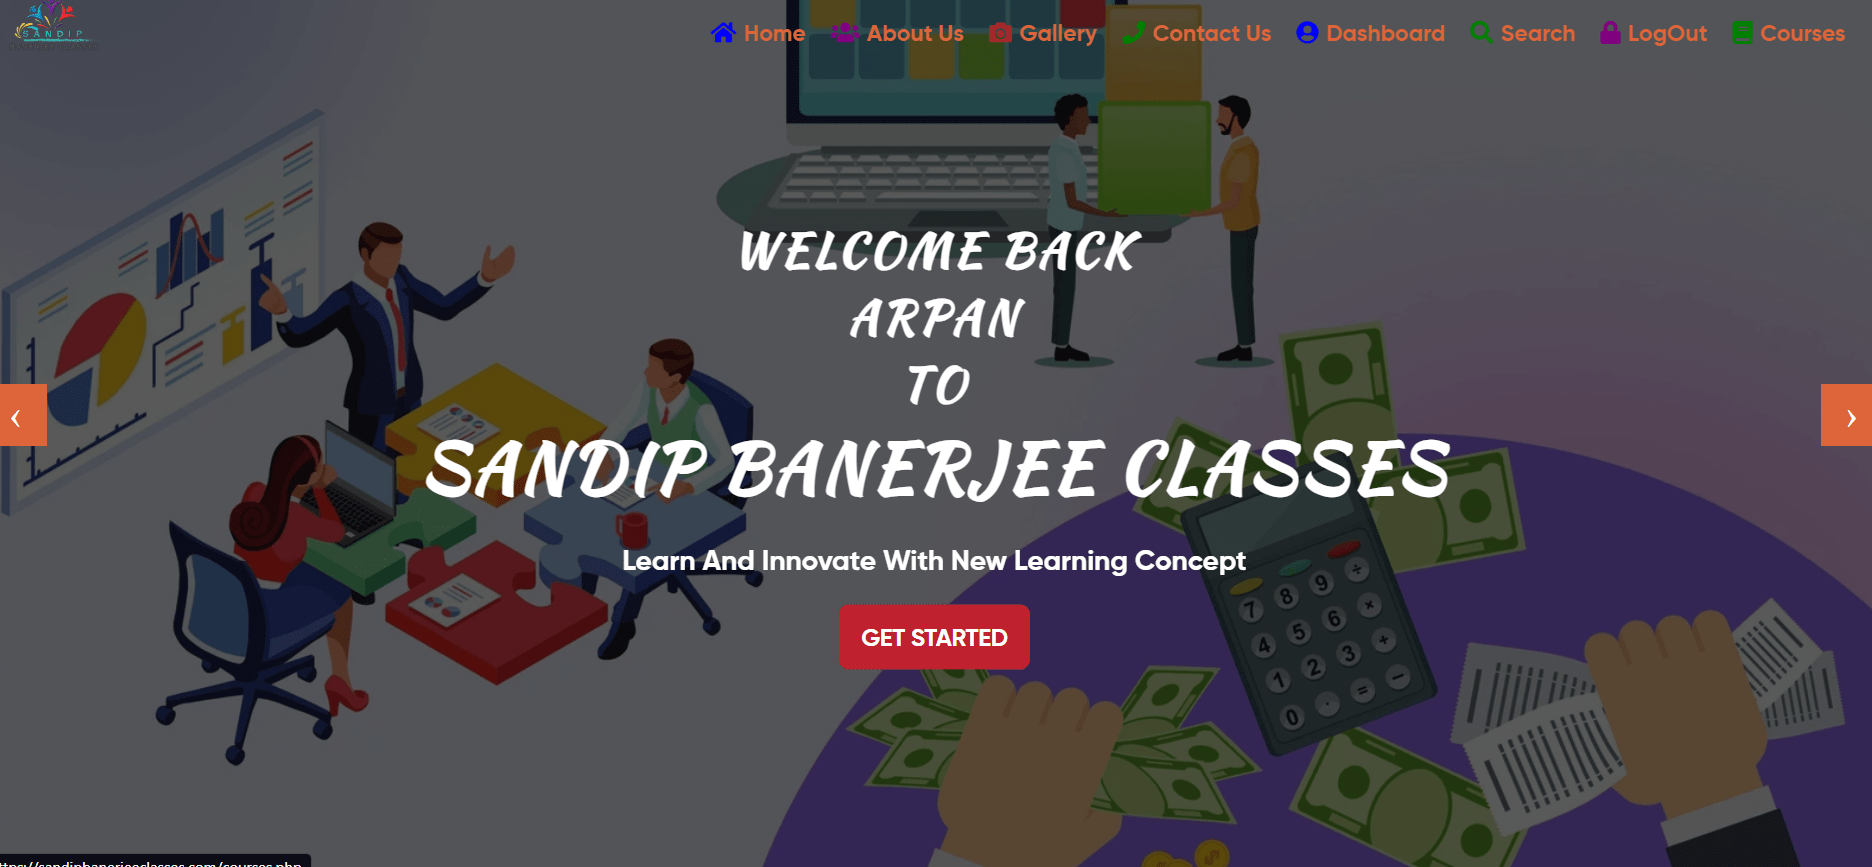 Sandip Banerjee Classes